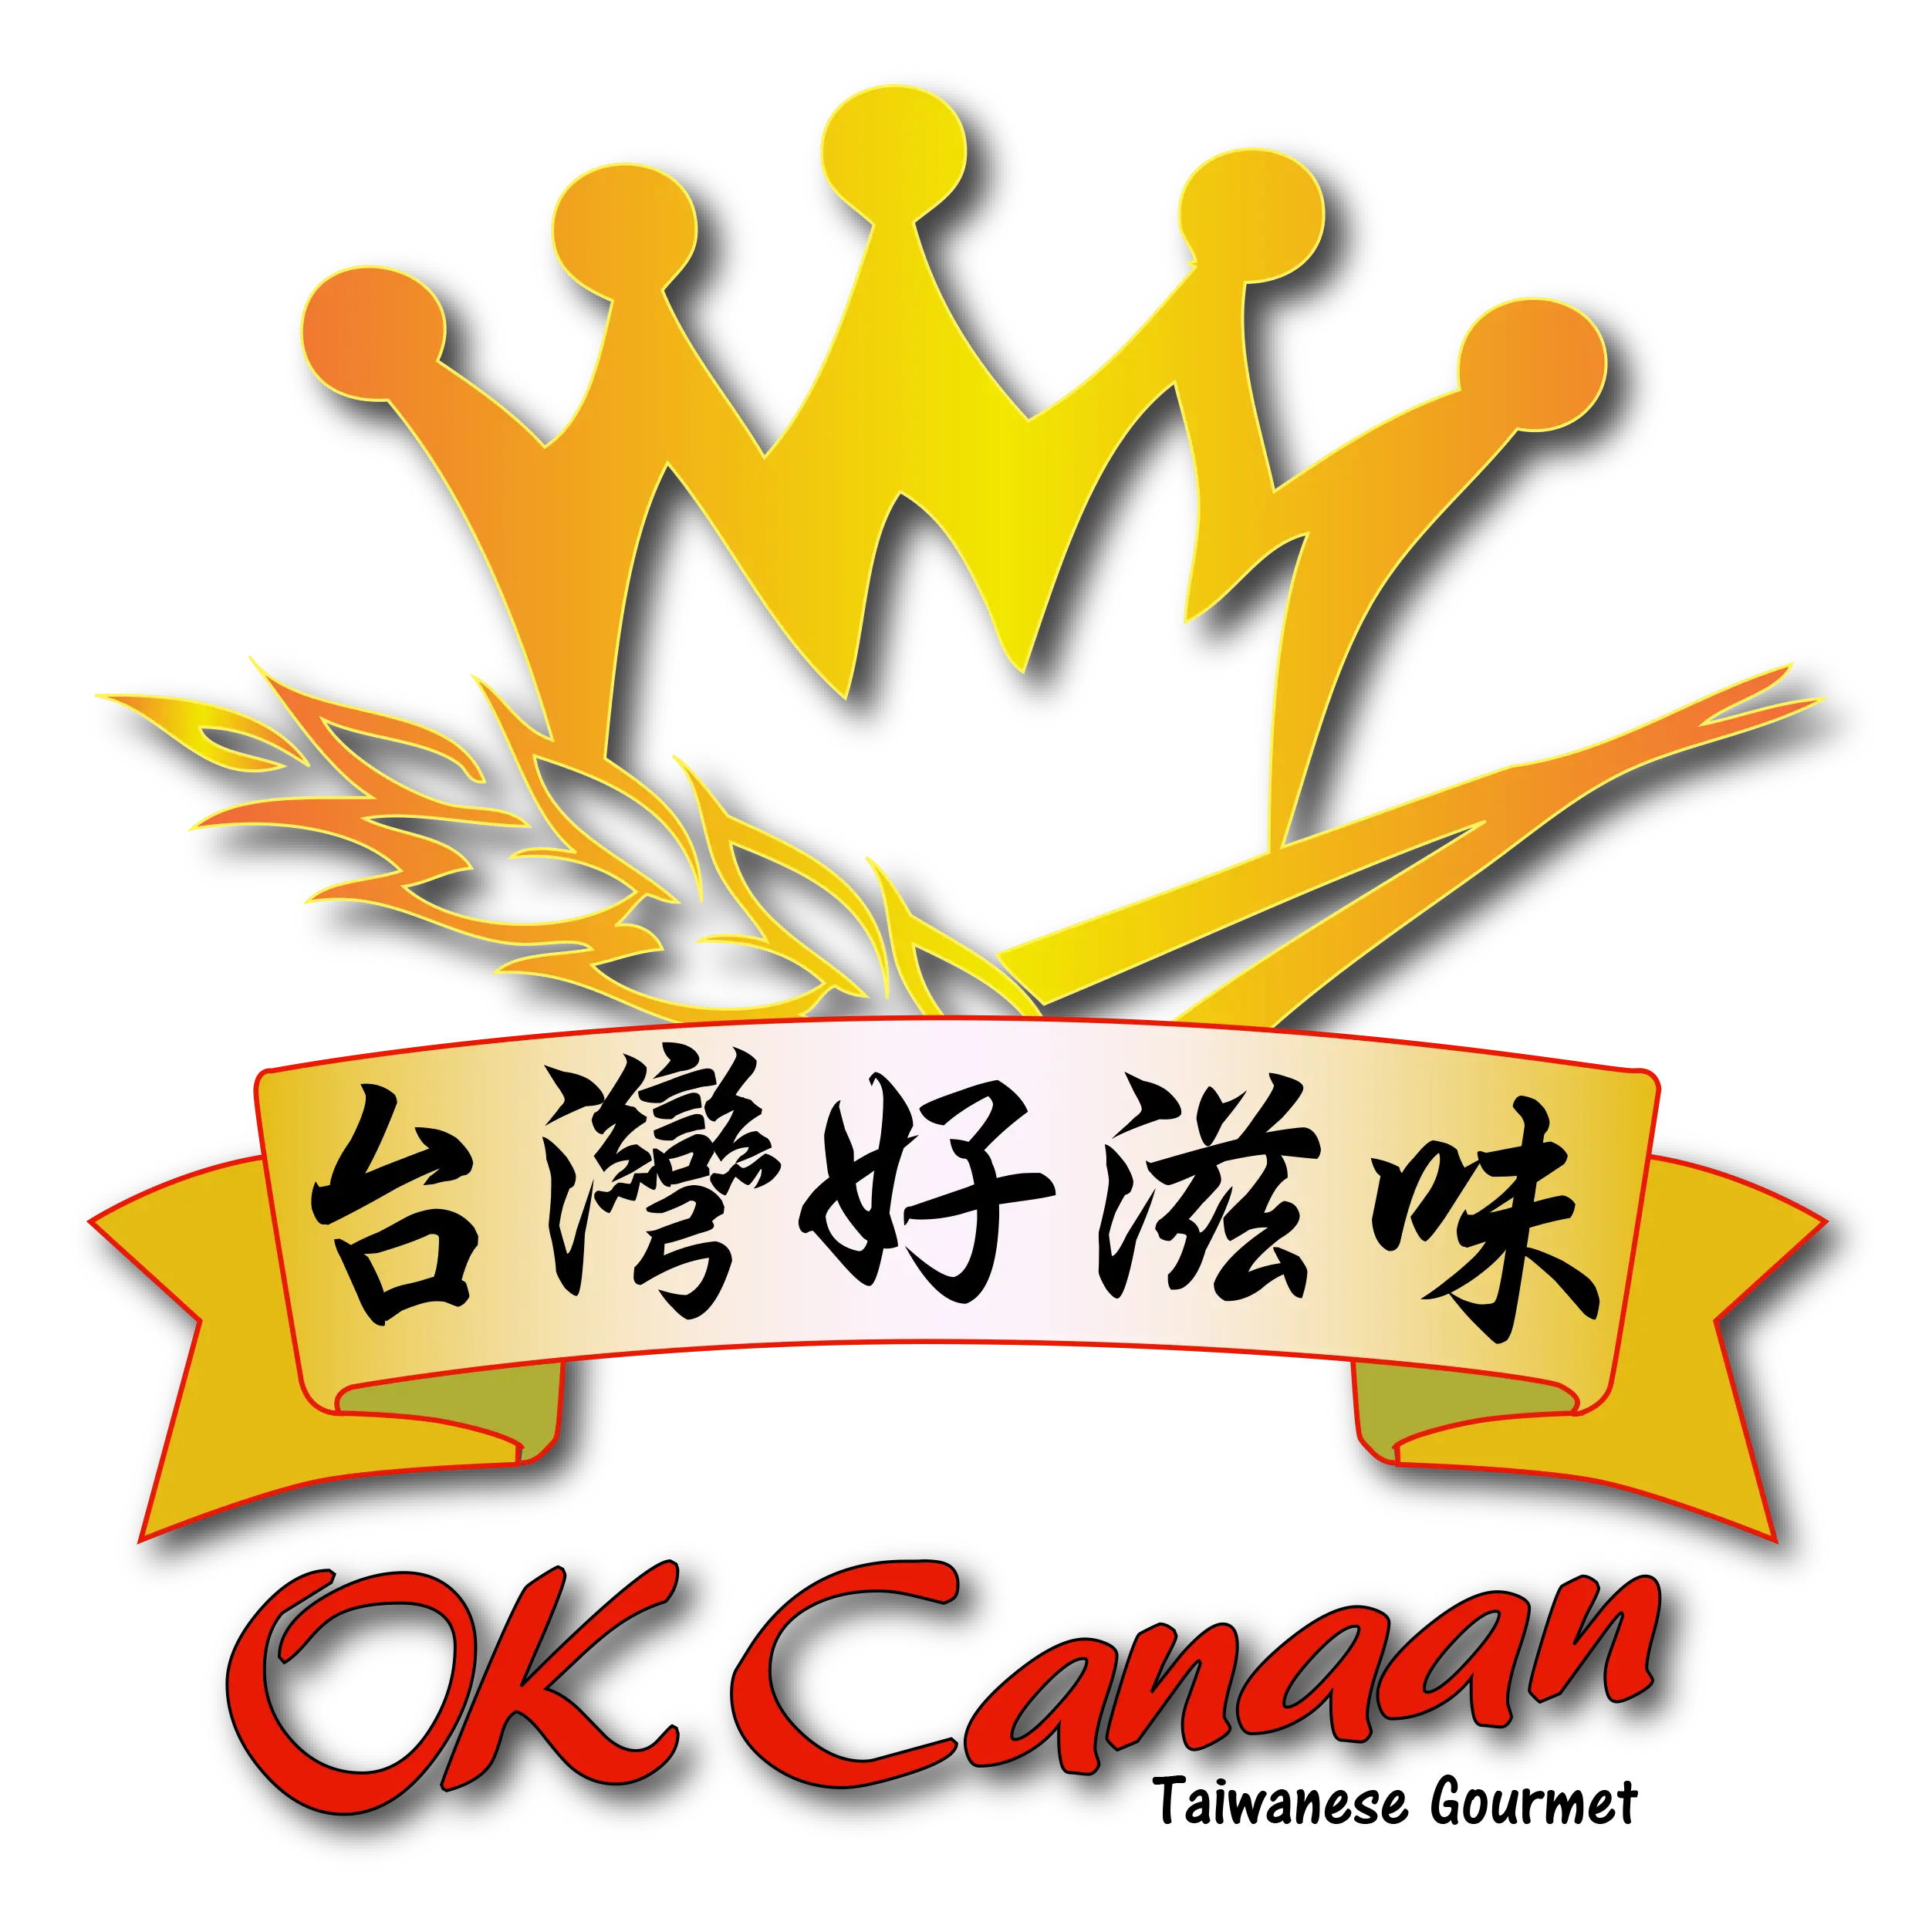 OK Canaan